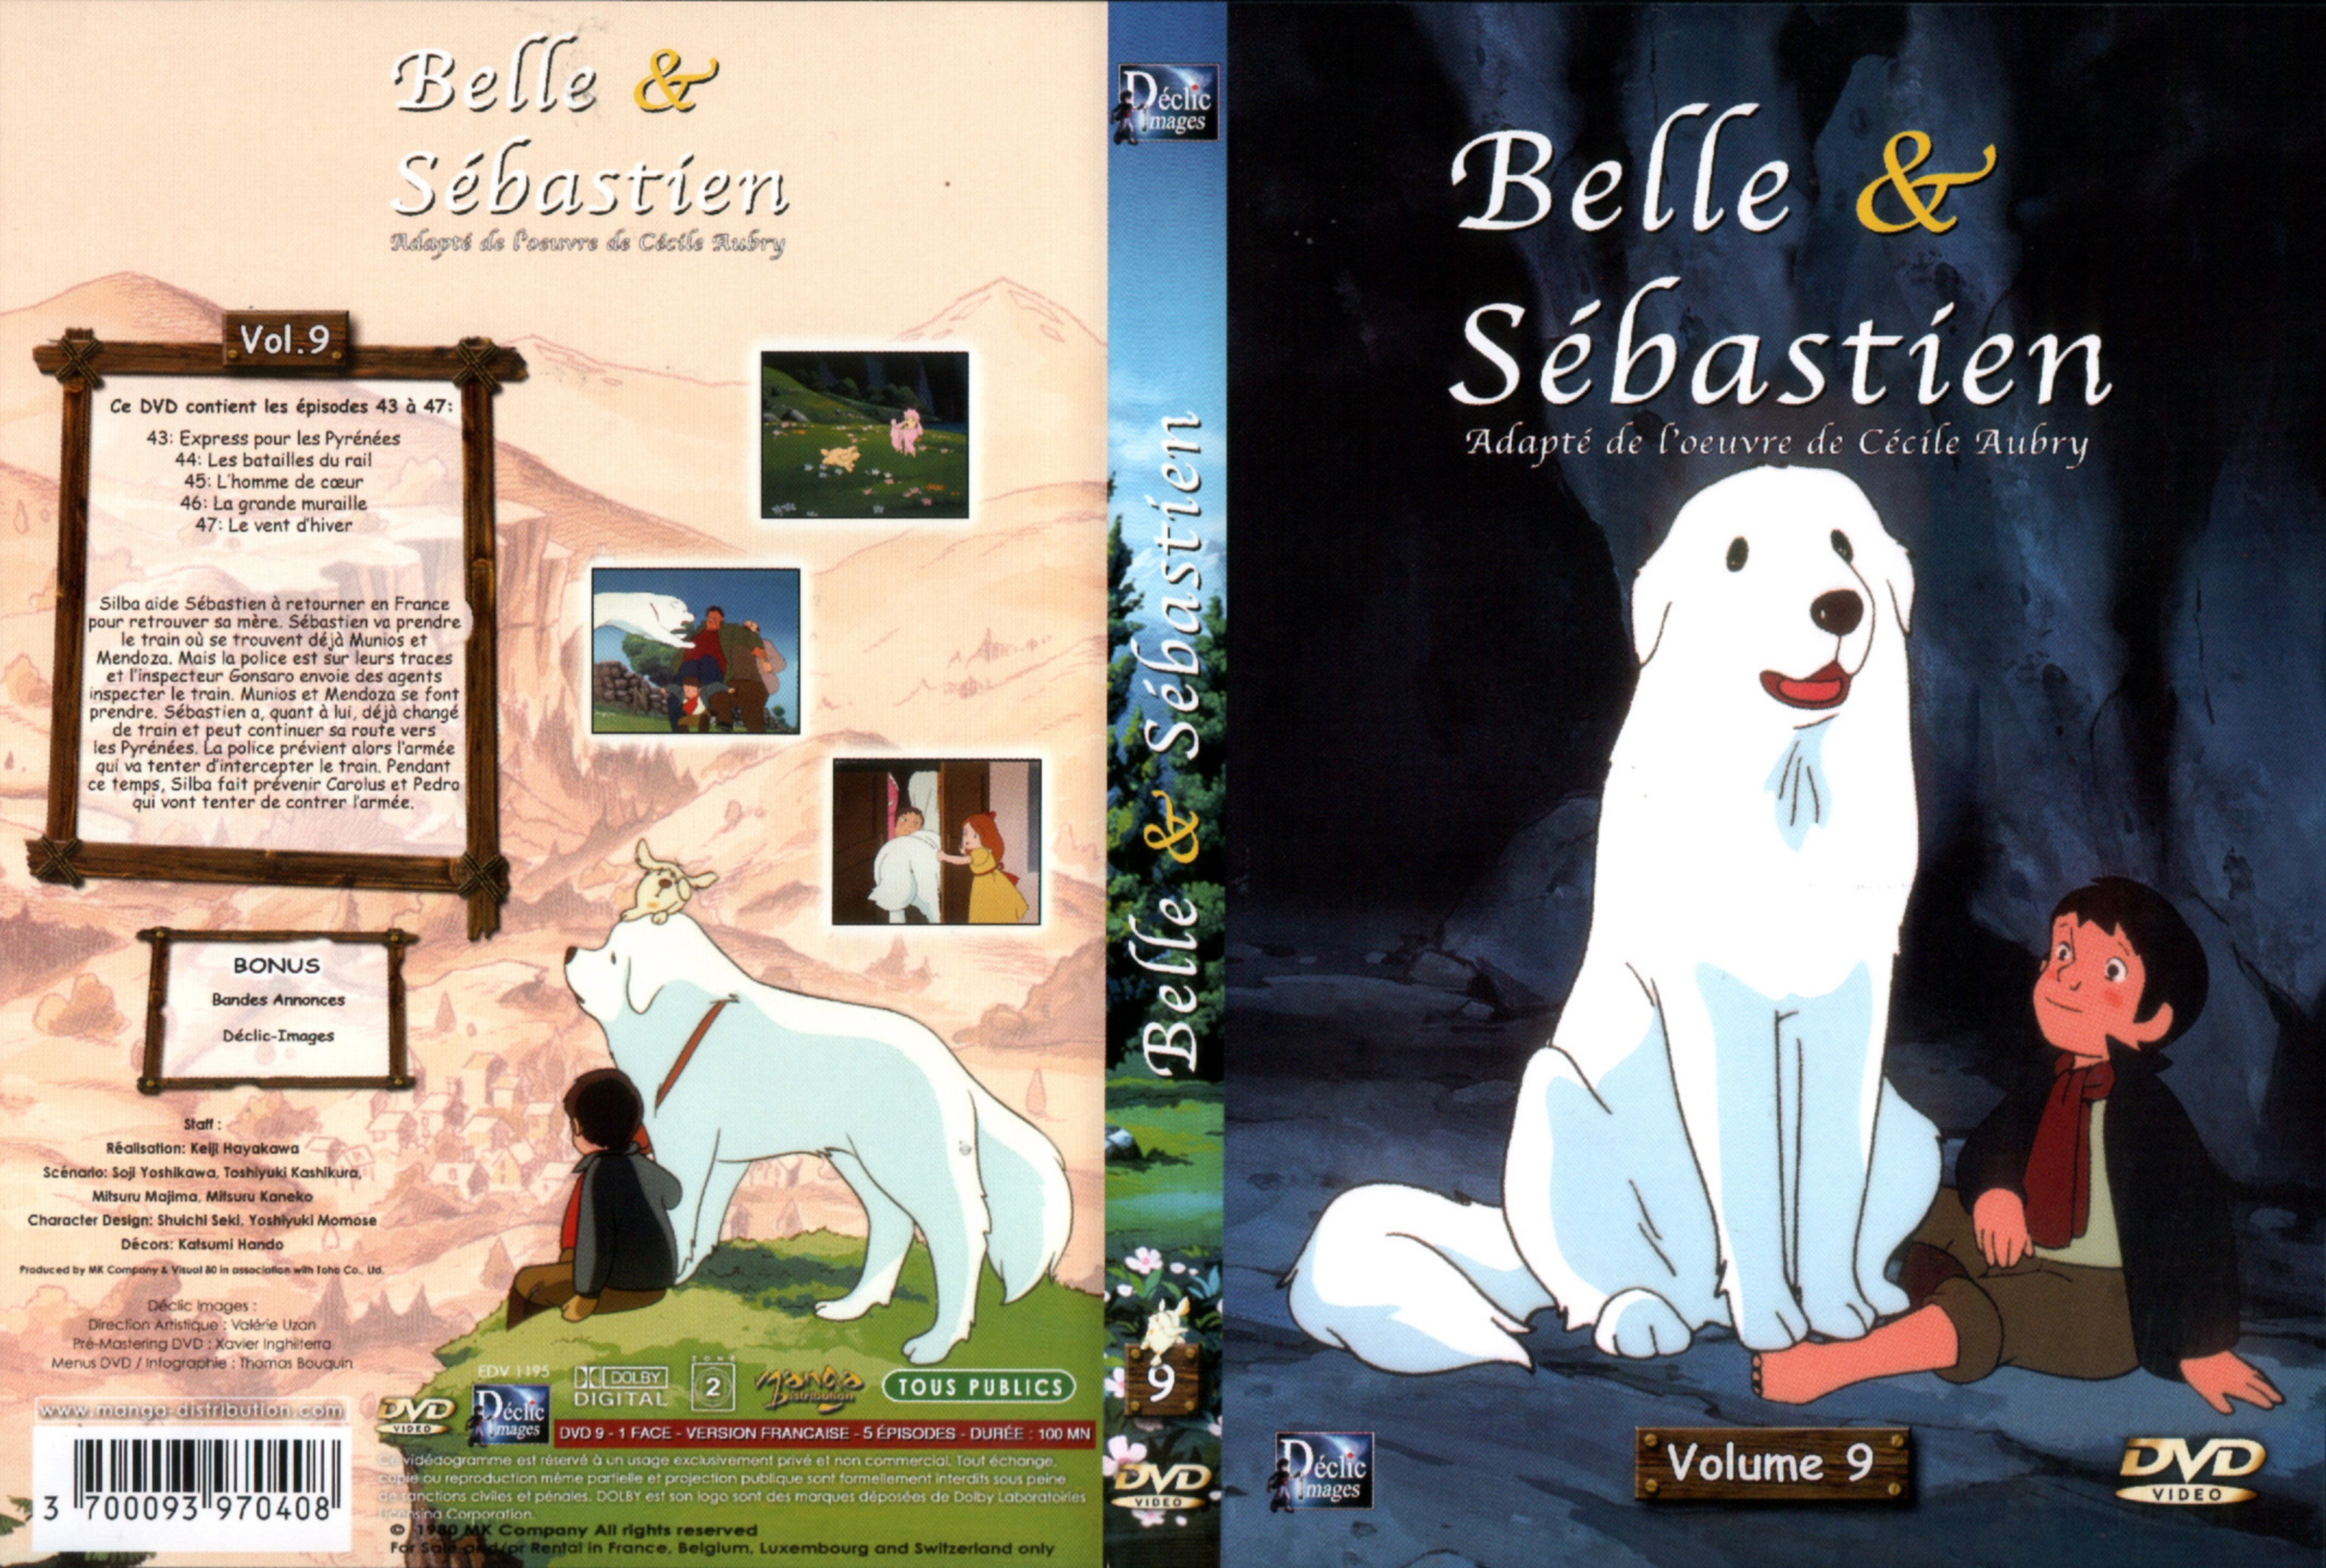 Jaquette DVD Belle et Sebastien DVD 09